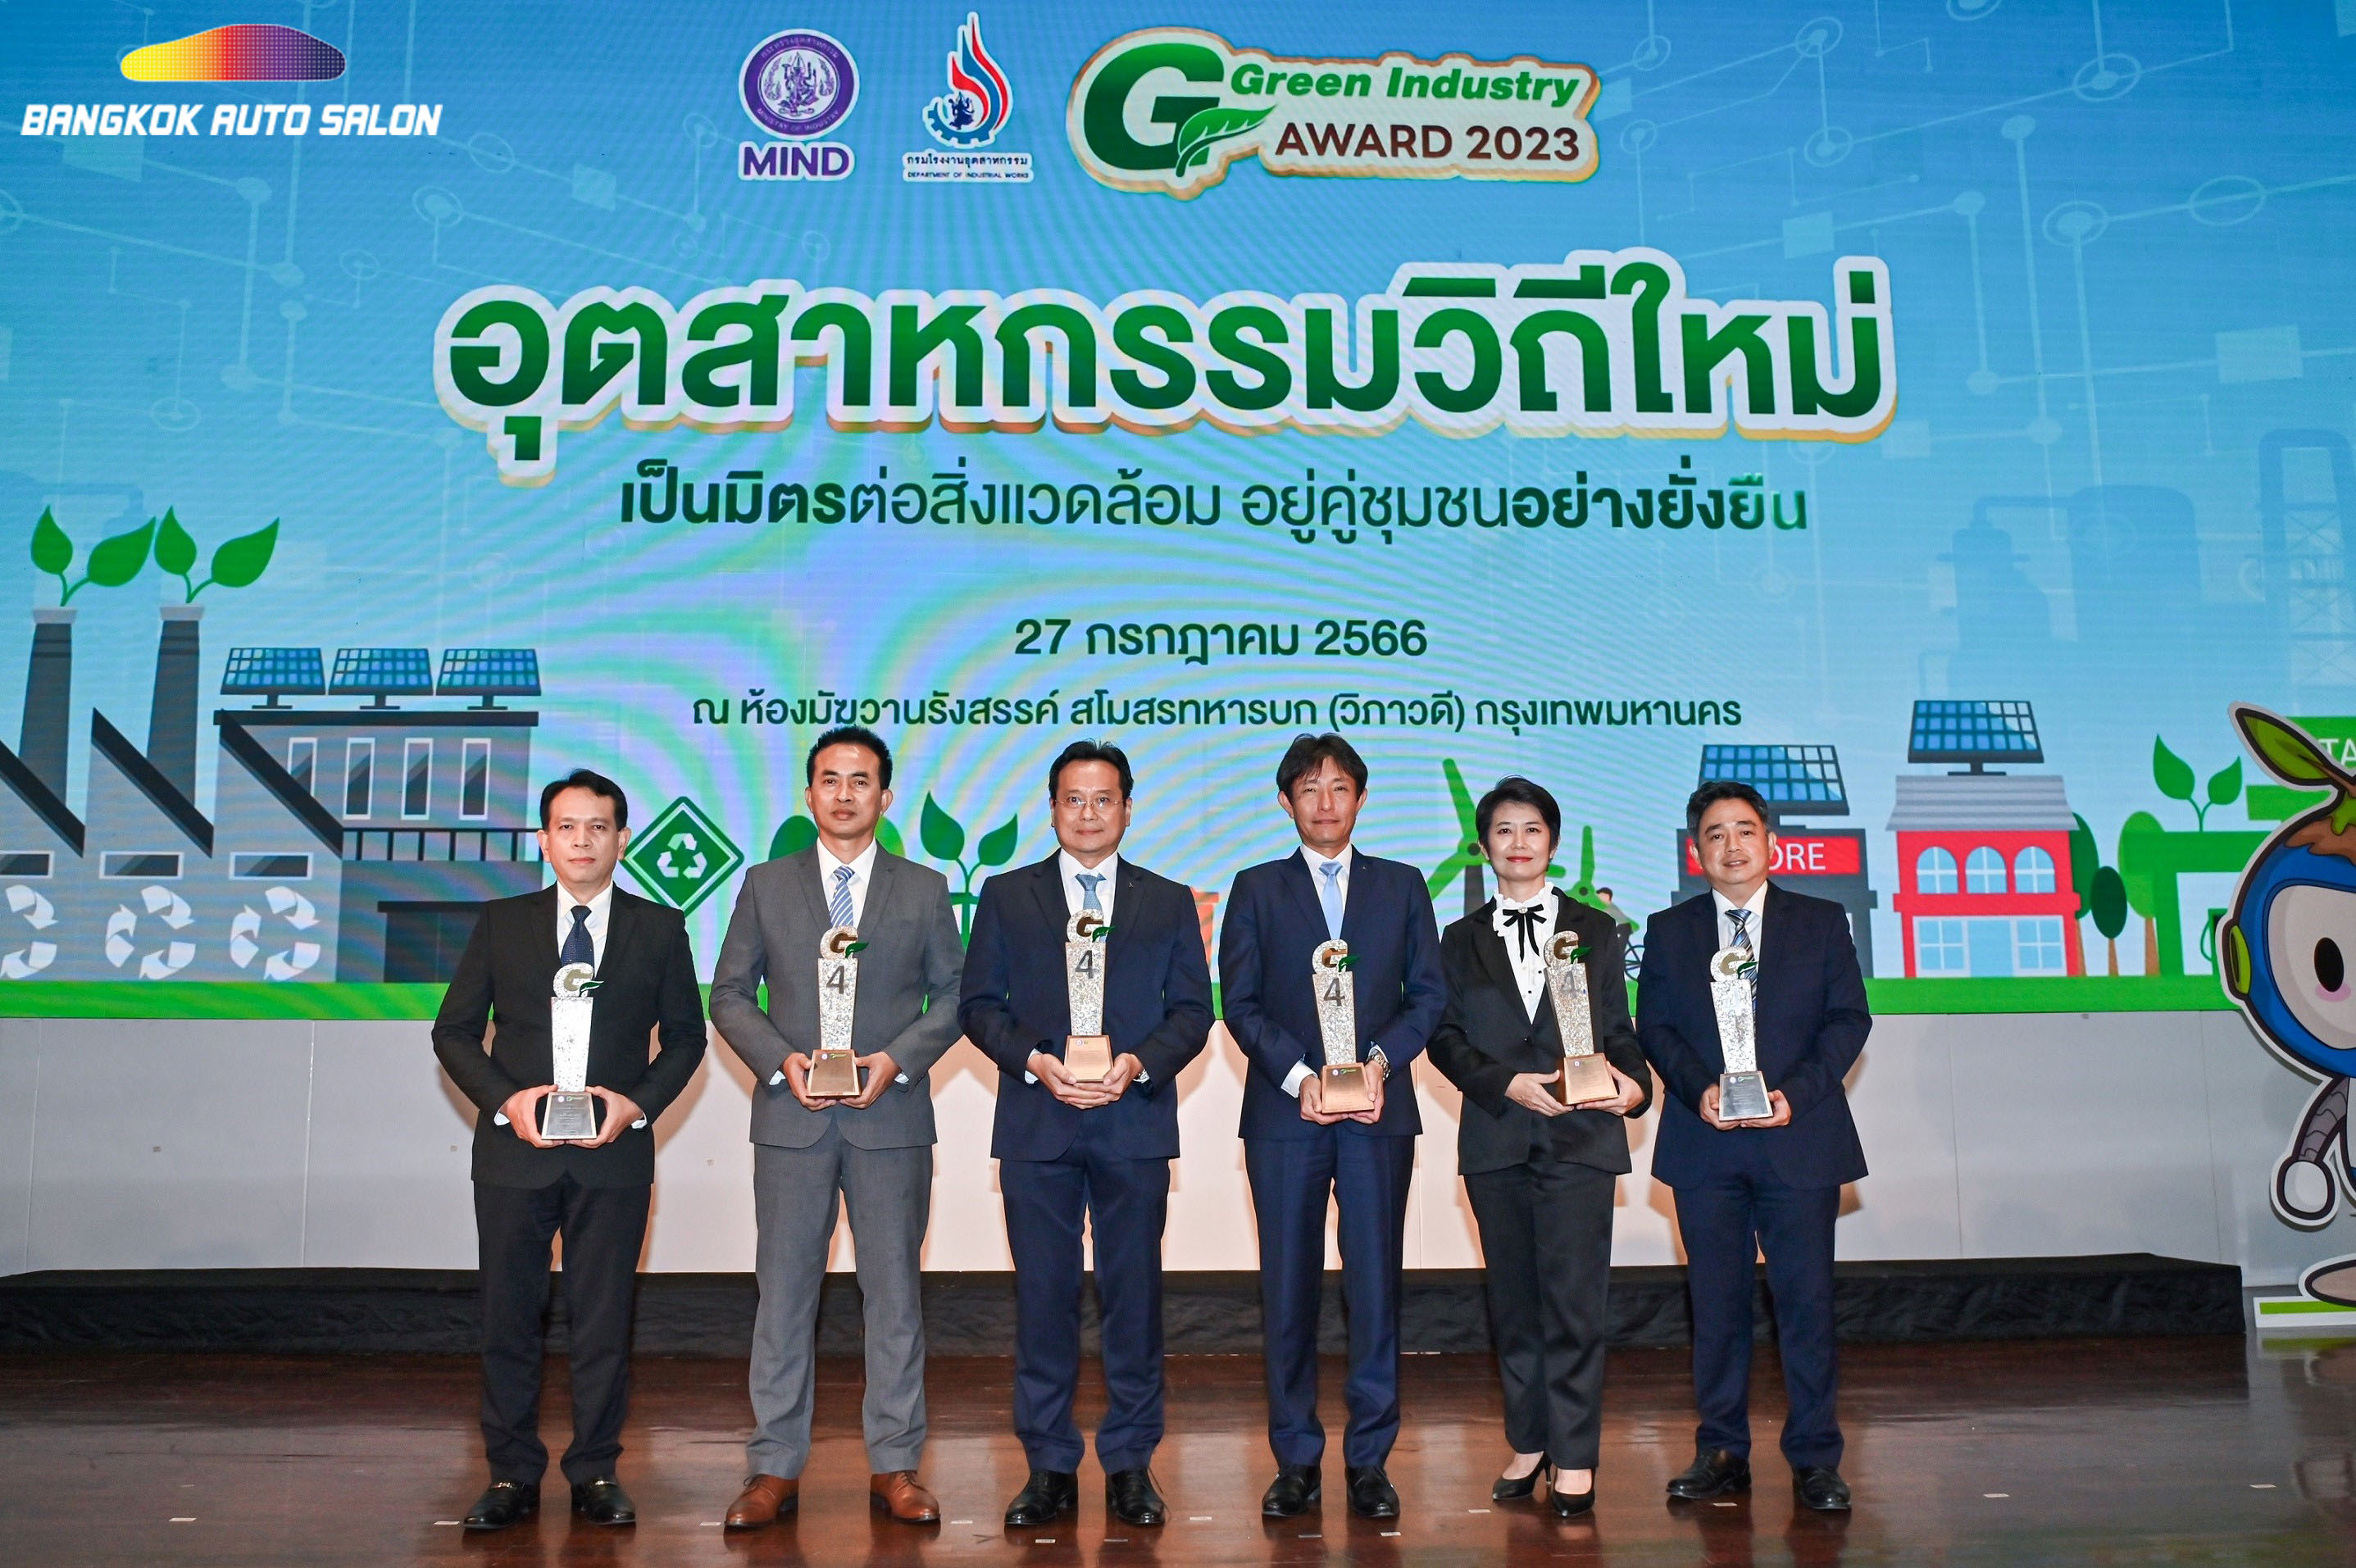 มิตซูบิชิ มอเตอร์ส ประเทศไทย และเอ็มเอ็มทีเอช เอ็นจิ้น  คว้า 6 รางวัลอุตสาหกรรมสีเขียว ระดับที่ 4